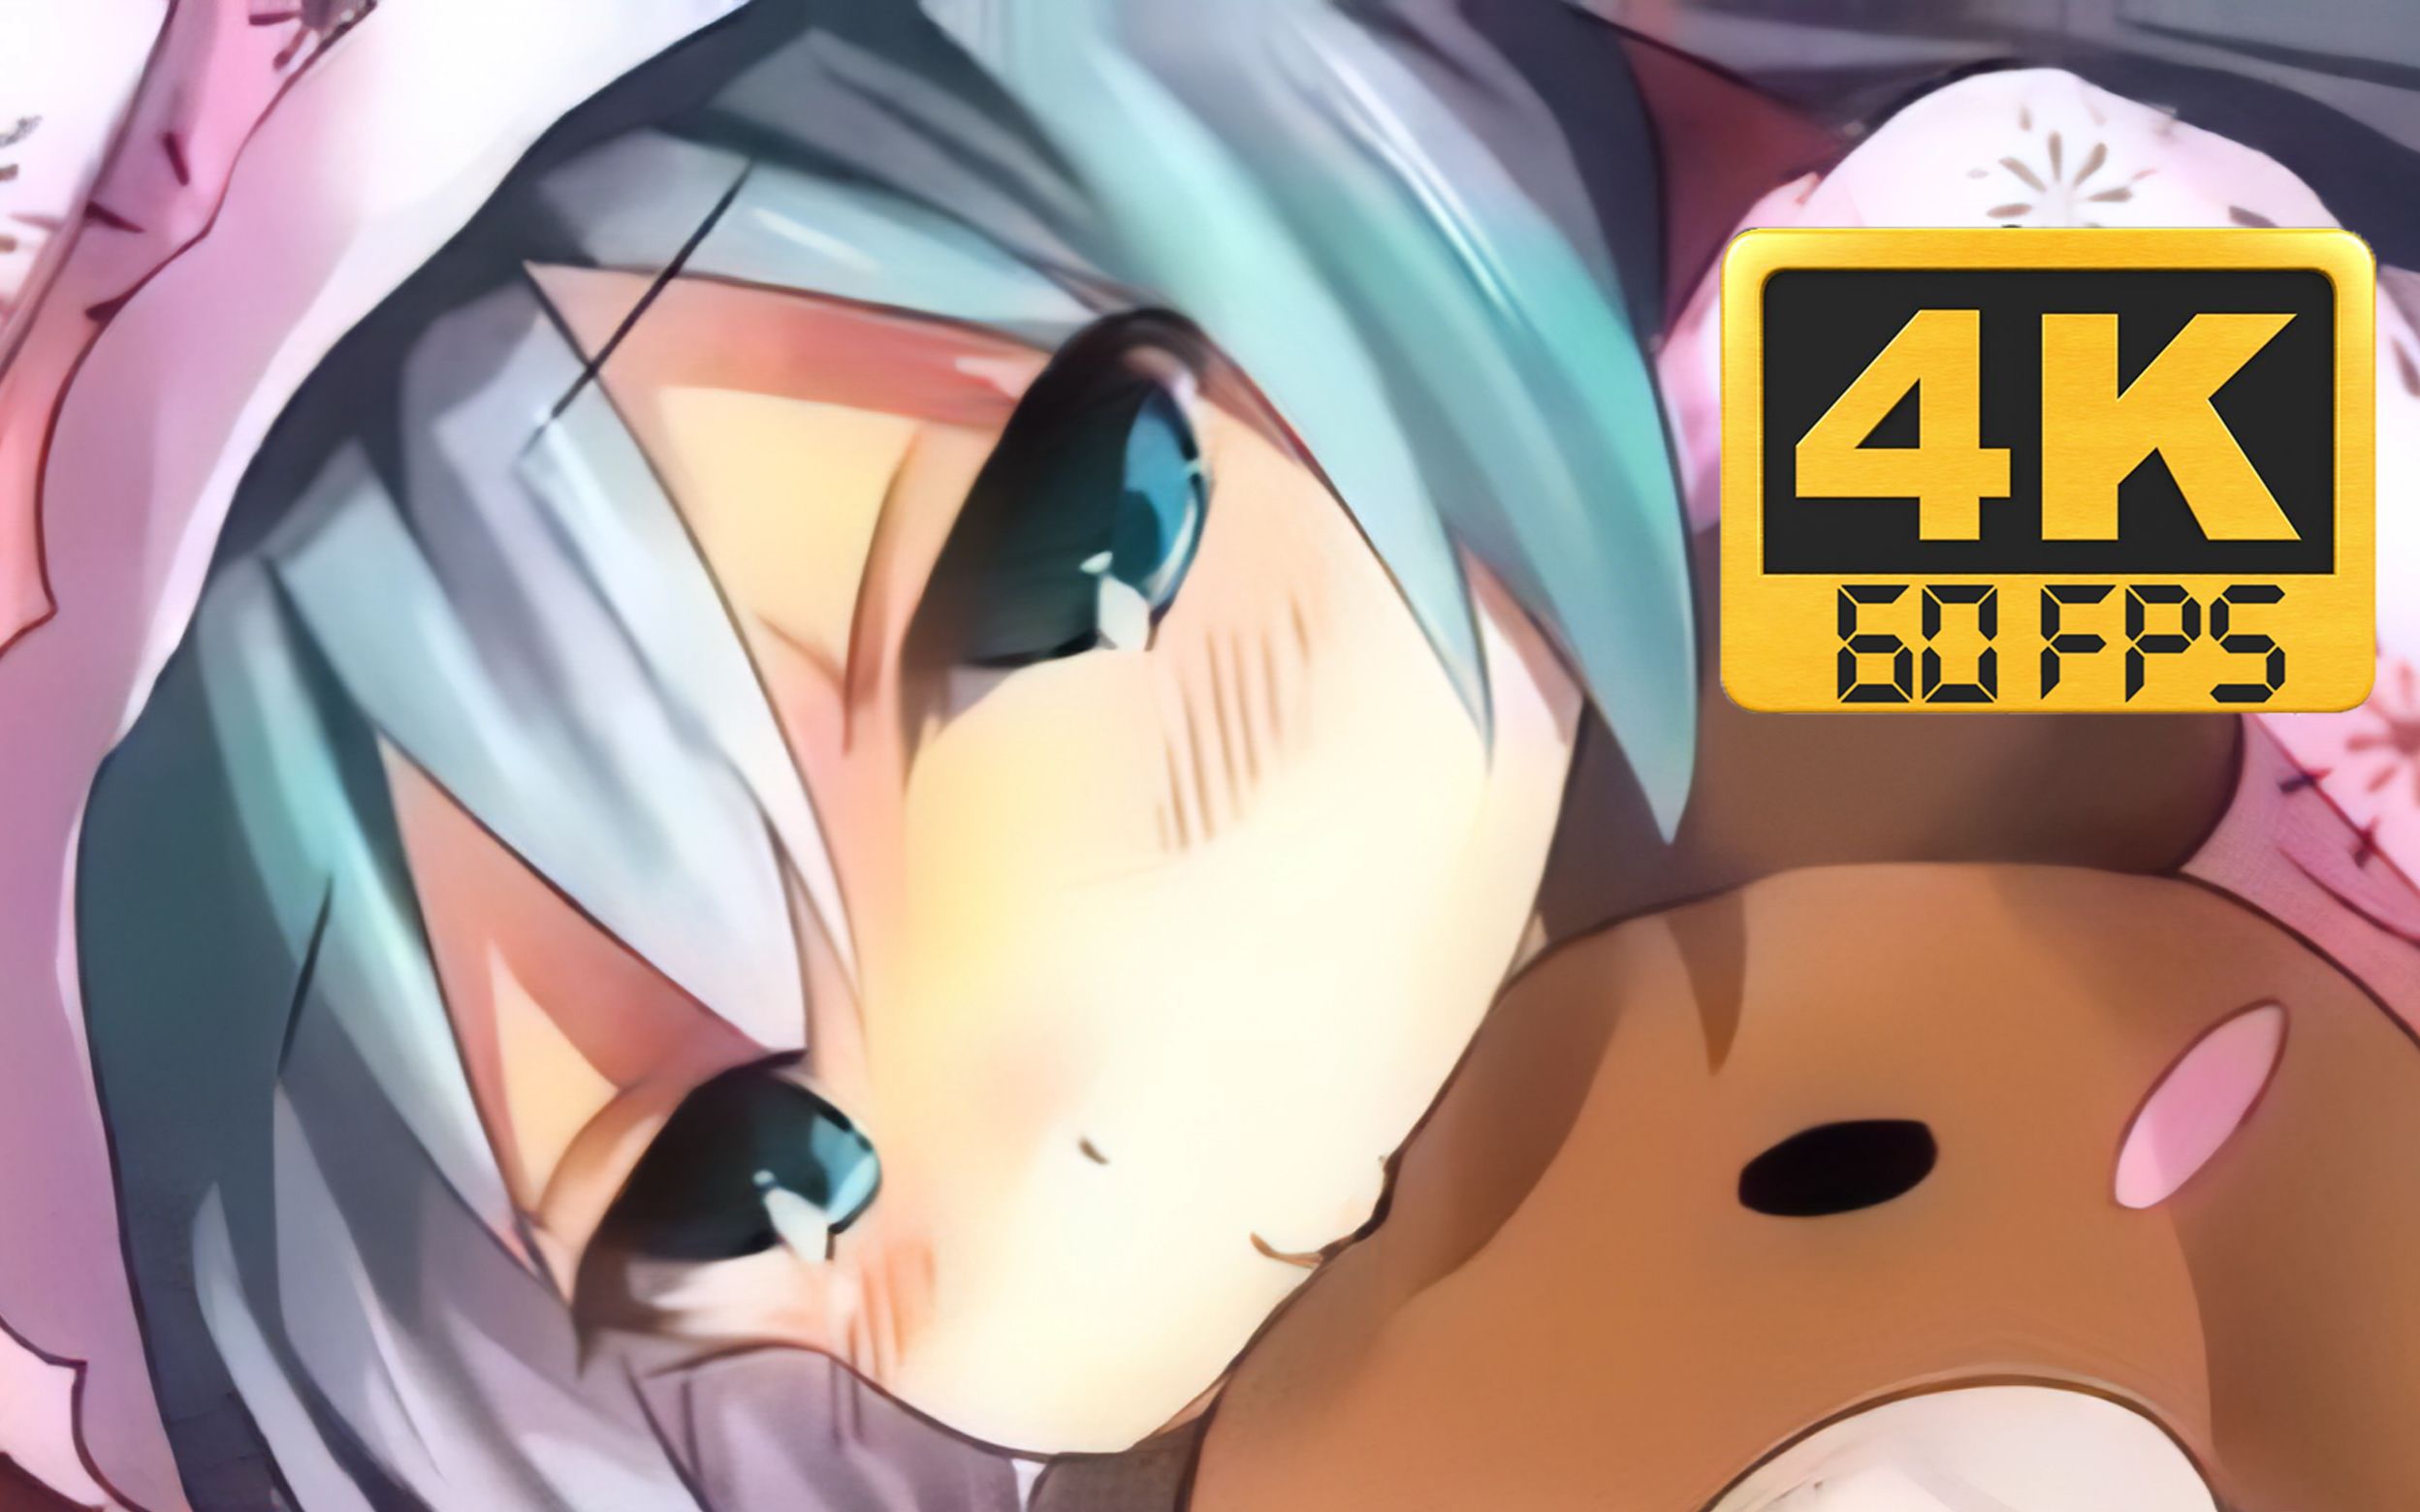 Anime in 60 FPS 4K is TERRIBLE! 